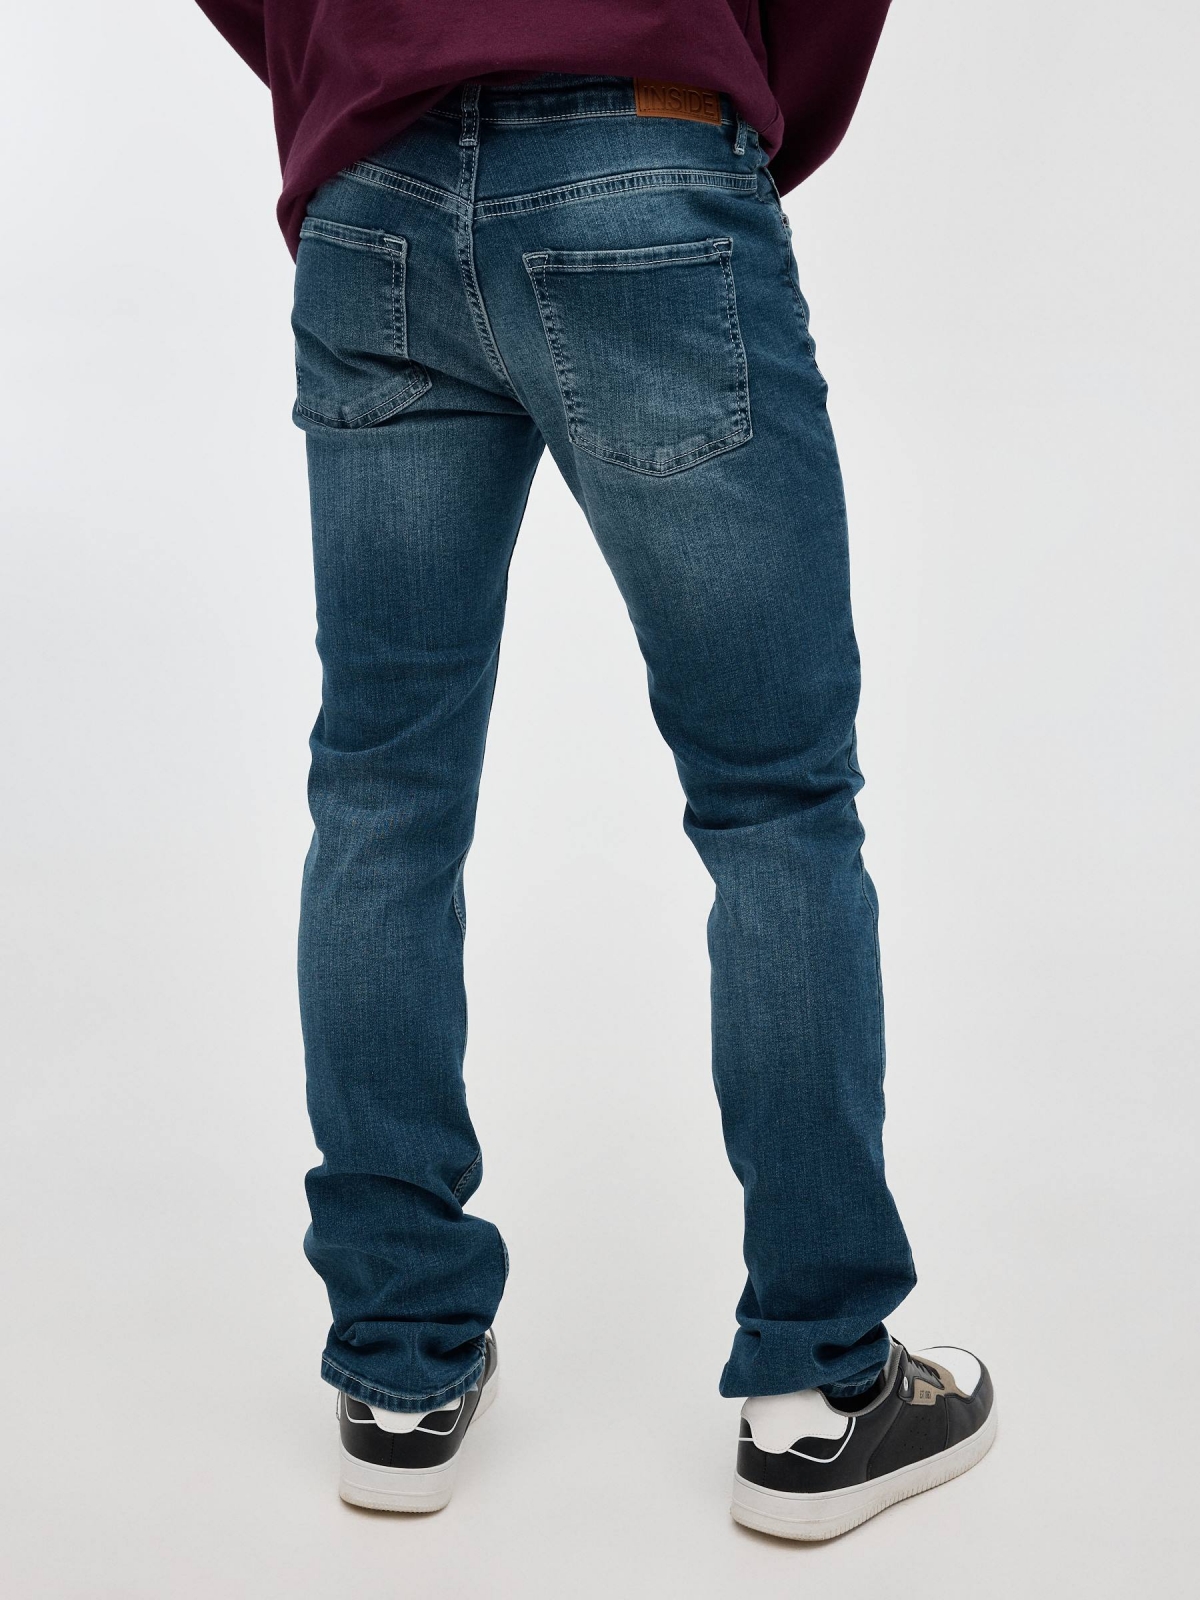 Dark blue regulation jeans blue middle back view